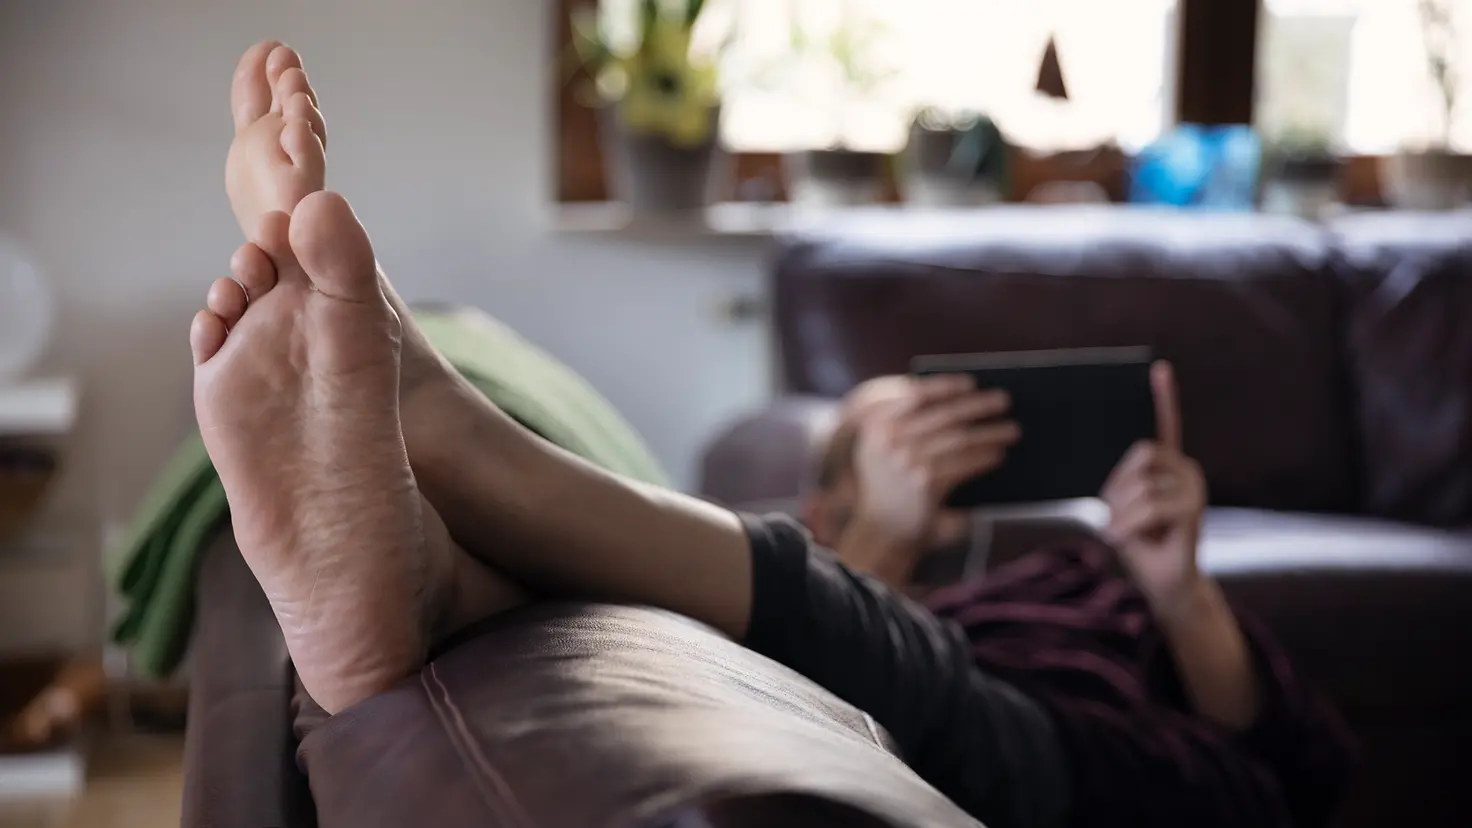 Eine Person liegt entspannt auf der Couch, hat die nackten Füße hochgelegt und liest ein Buch. Es kann der Prophylaxe gegen Fußpilz dienen, häufiger die Schuhe und Strümpfe auszuziehen.